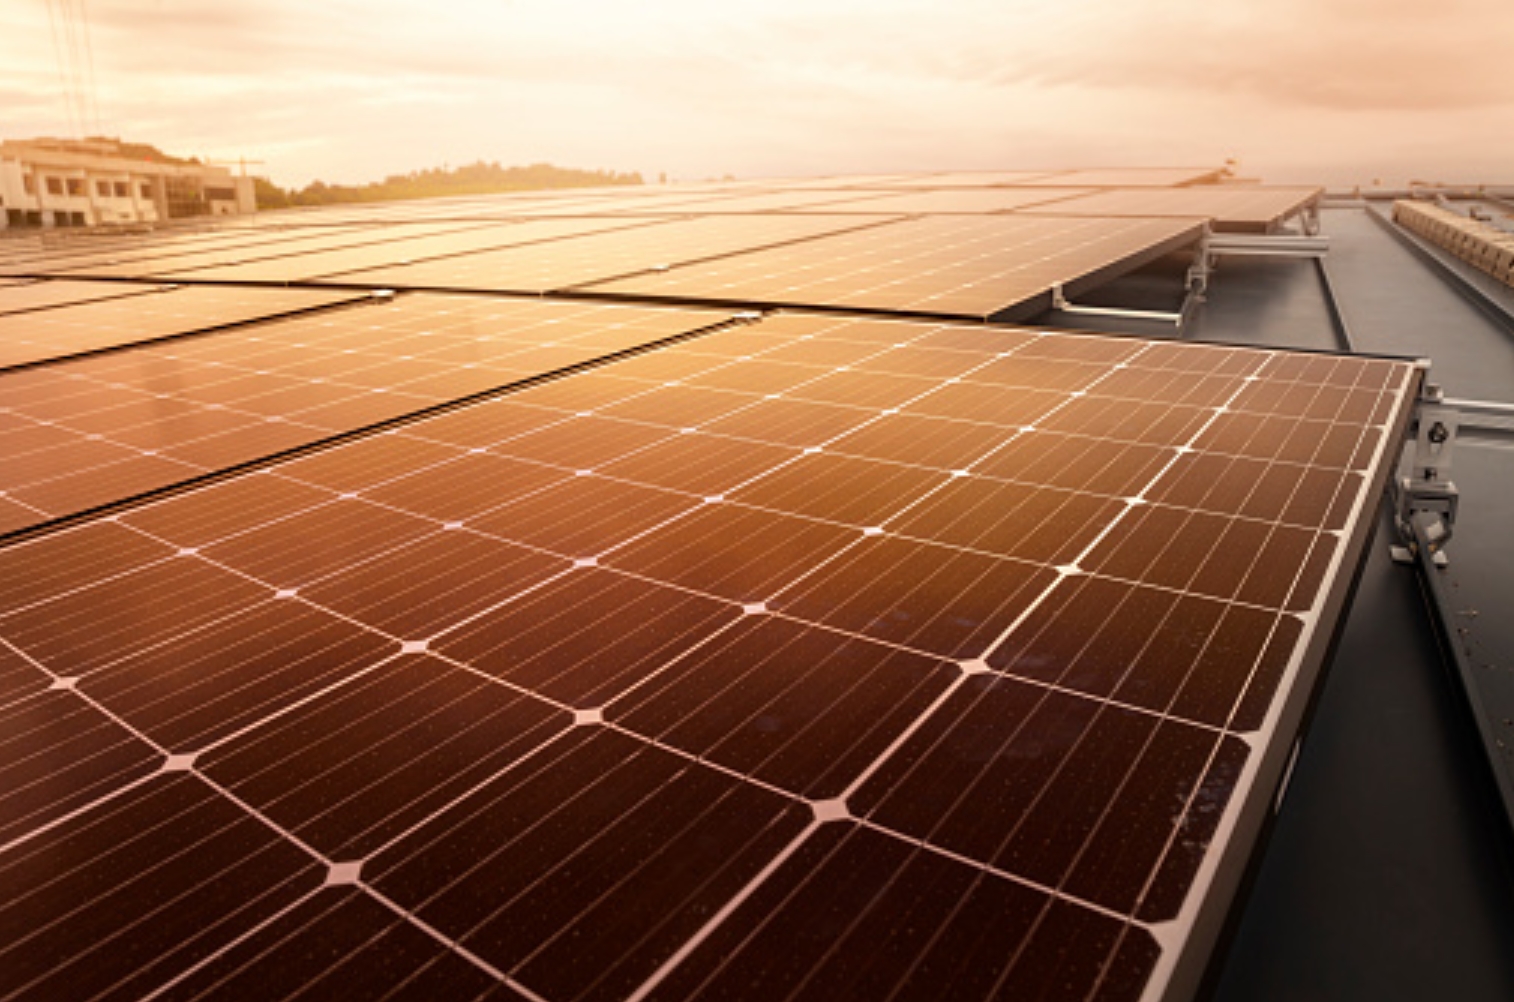 Vanaf 1 juli 2022 mogen gemeenten bedrijven verplichten om zonnepanelen op daken te plaatsen